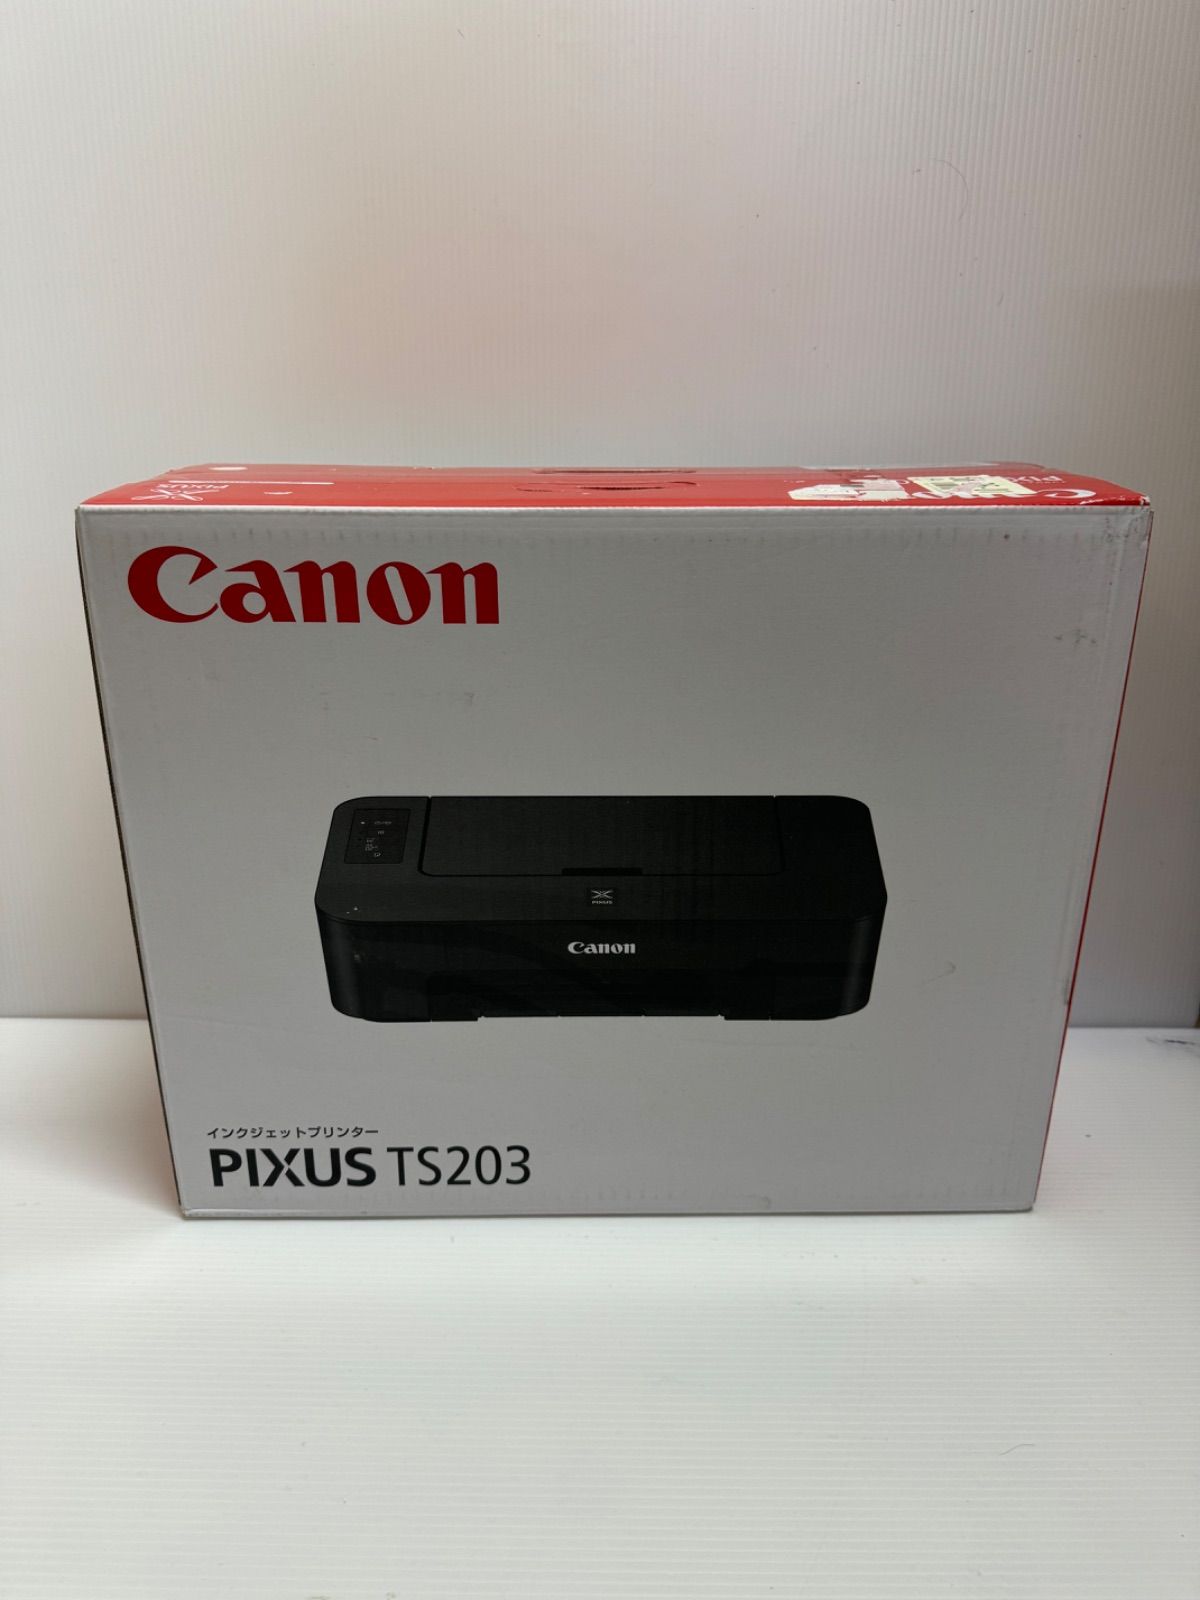 新品未開封 キヤノン Canon PIXUS TS203 プリンタープリンター - PC 